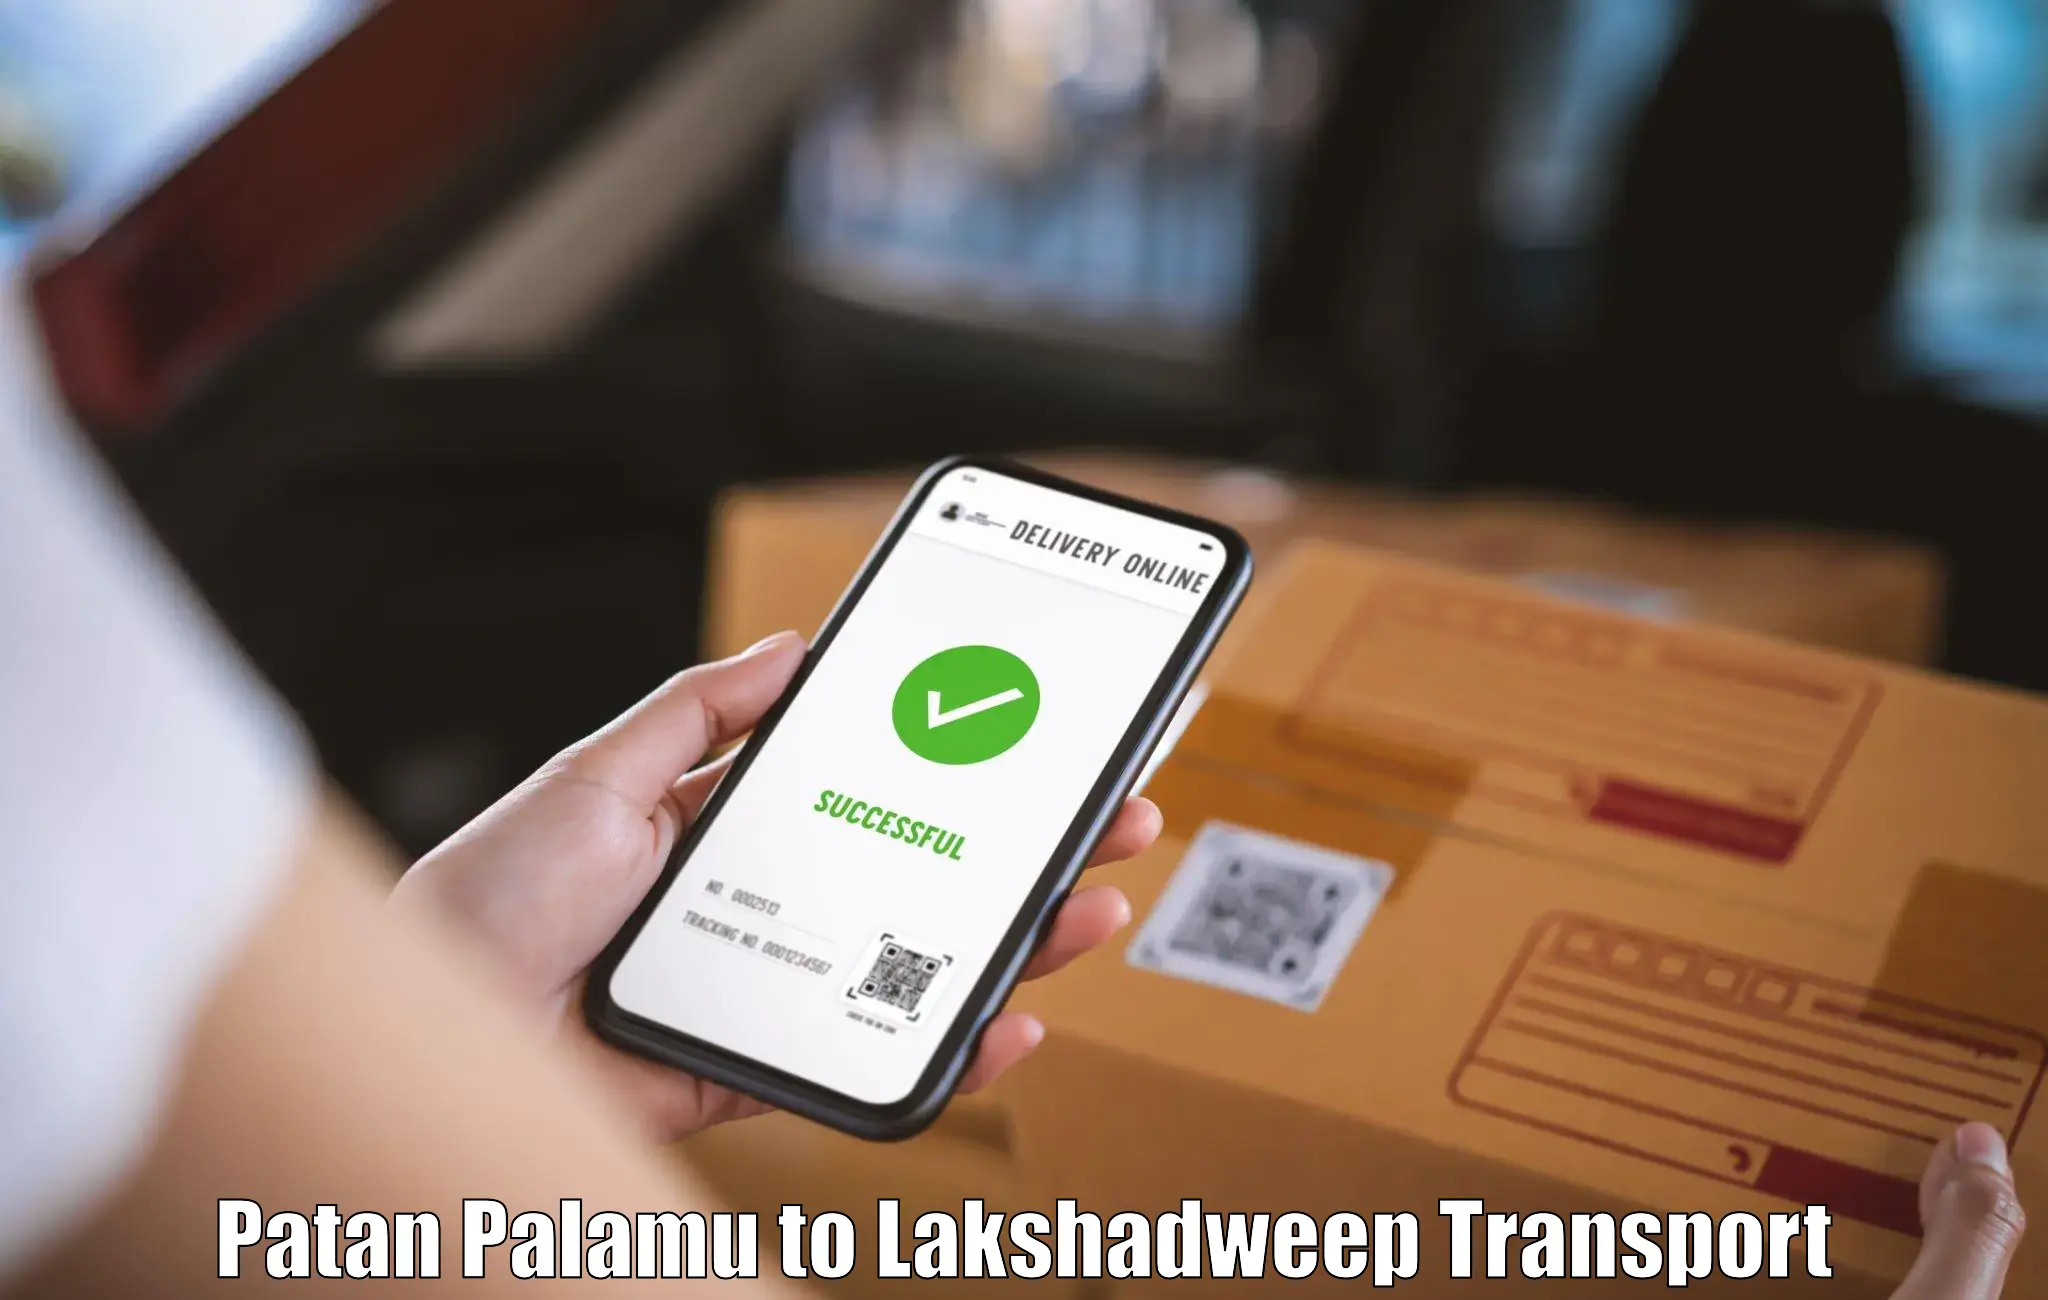 Online transport booking Patan Palamu to Lakshadweep